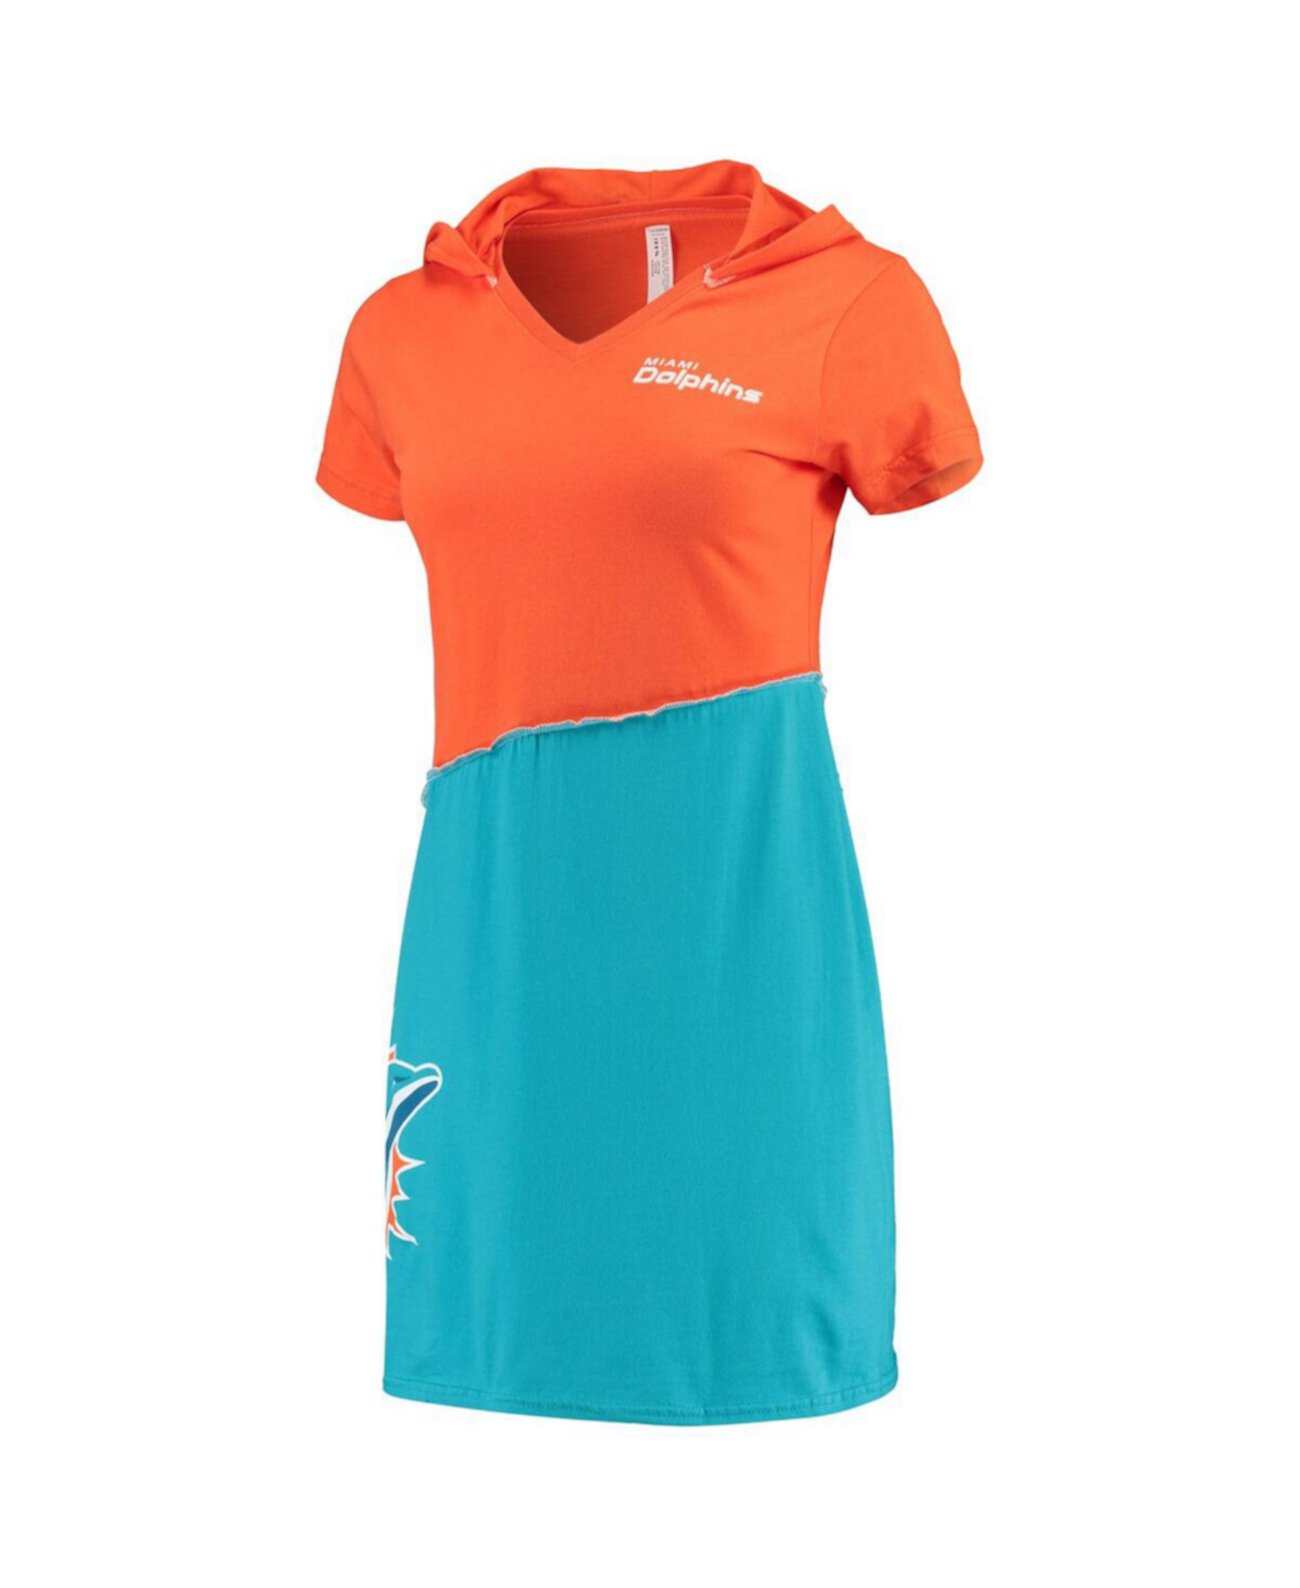 Женское мини-платье с капюшоном оранжевого цвета Aqua Miami Dolphins Refried Apparel